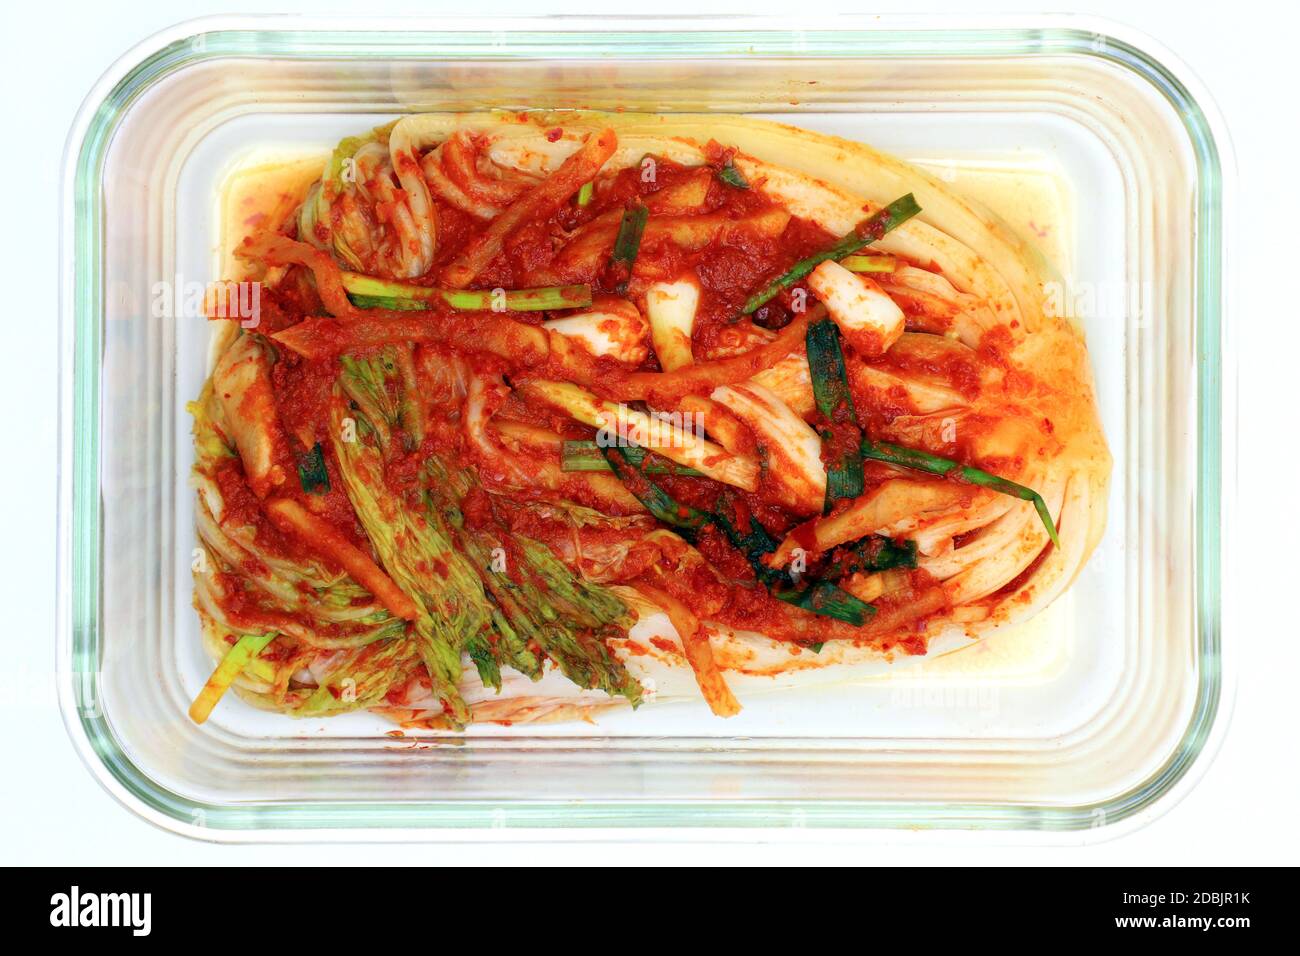 Il kimchi è il nome delle verdure sottaceto coreane. Il kimchi nella foto è fatto di cavolo cinese, aspero, dolce e leggermente piccante. Può essere mangiato come Foto Stock